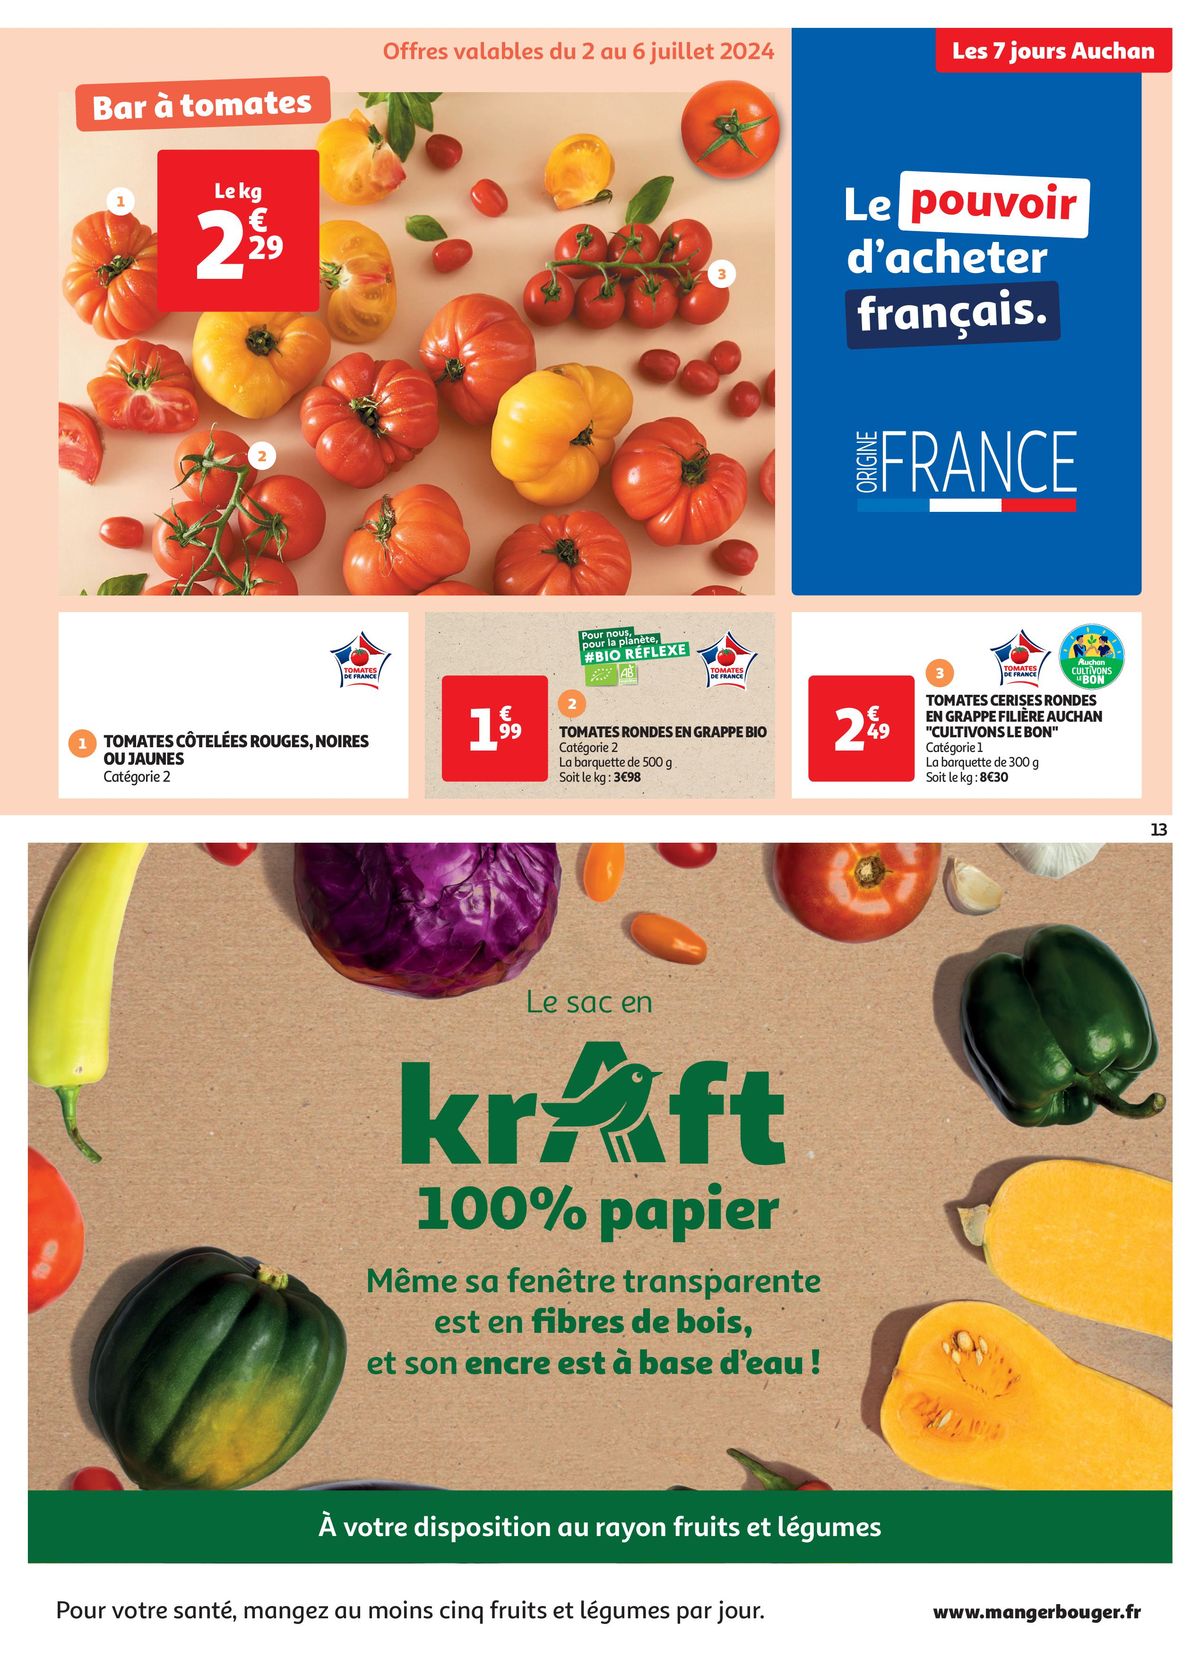 Catalogue C'est les 7 jours Auchan dans votre super !, page 00013